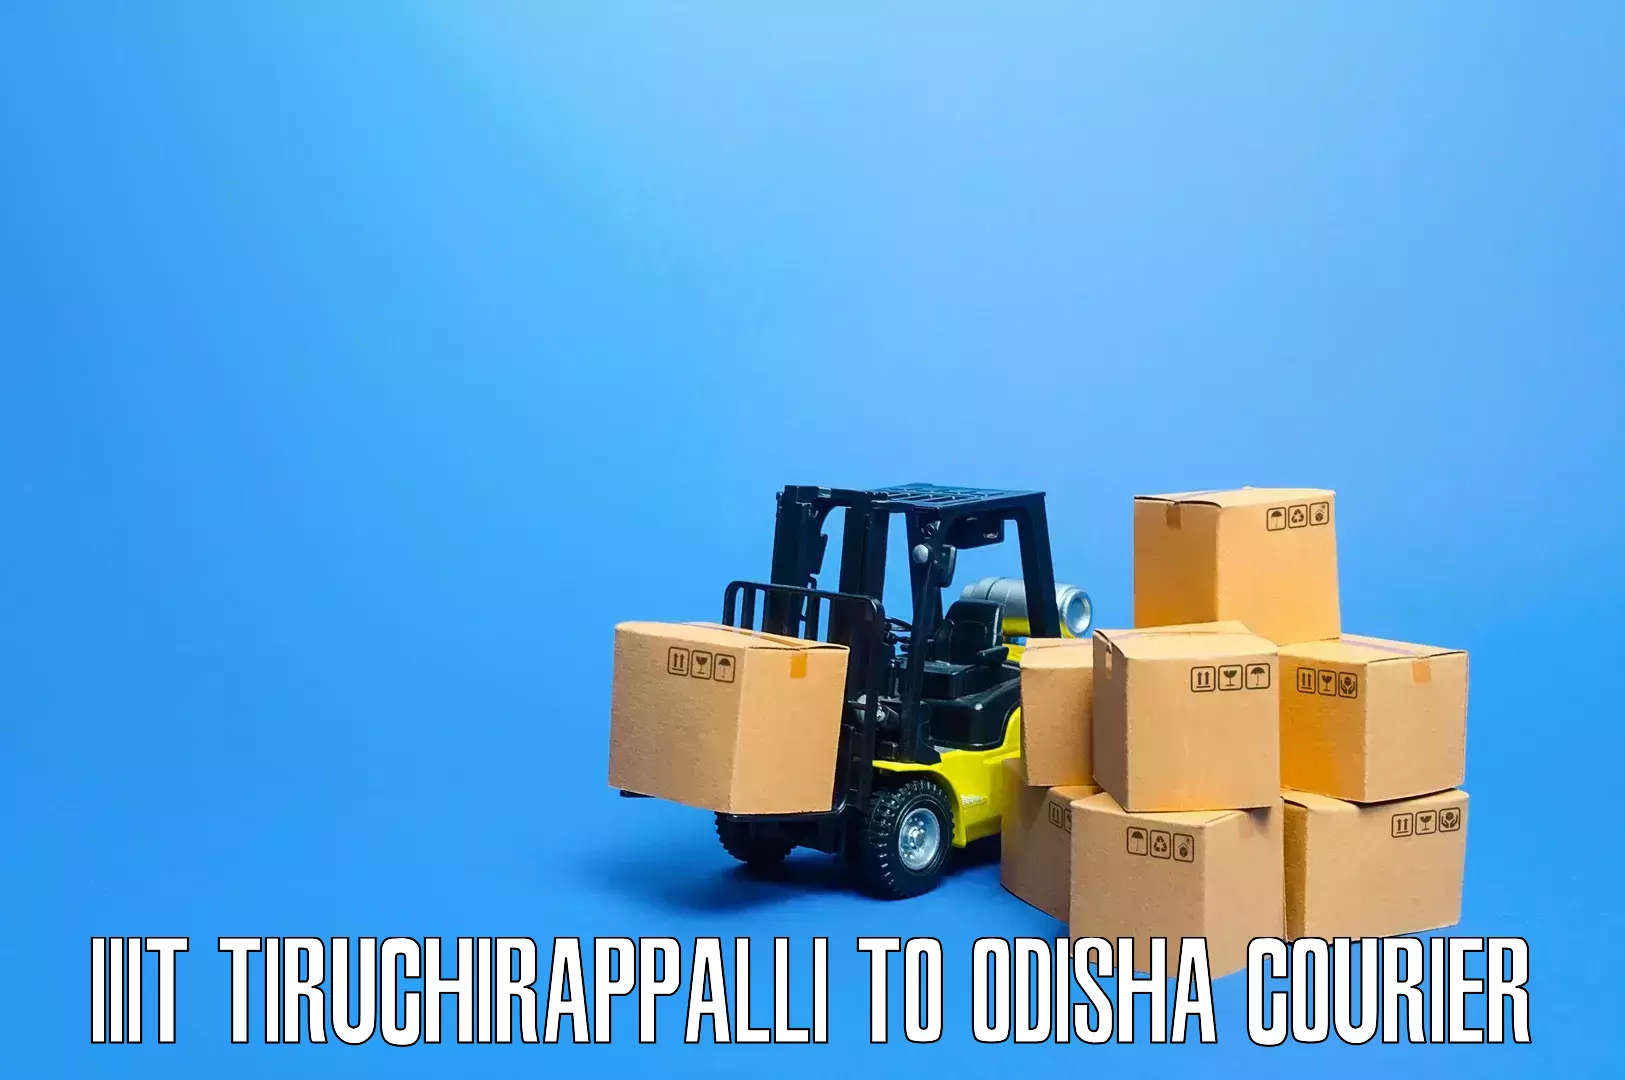 Household goods movers and packers IIIT Tiruchirappalli to Kamakhyanagar